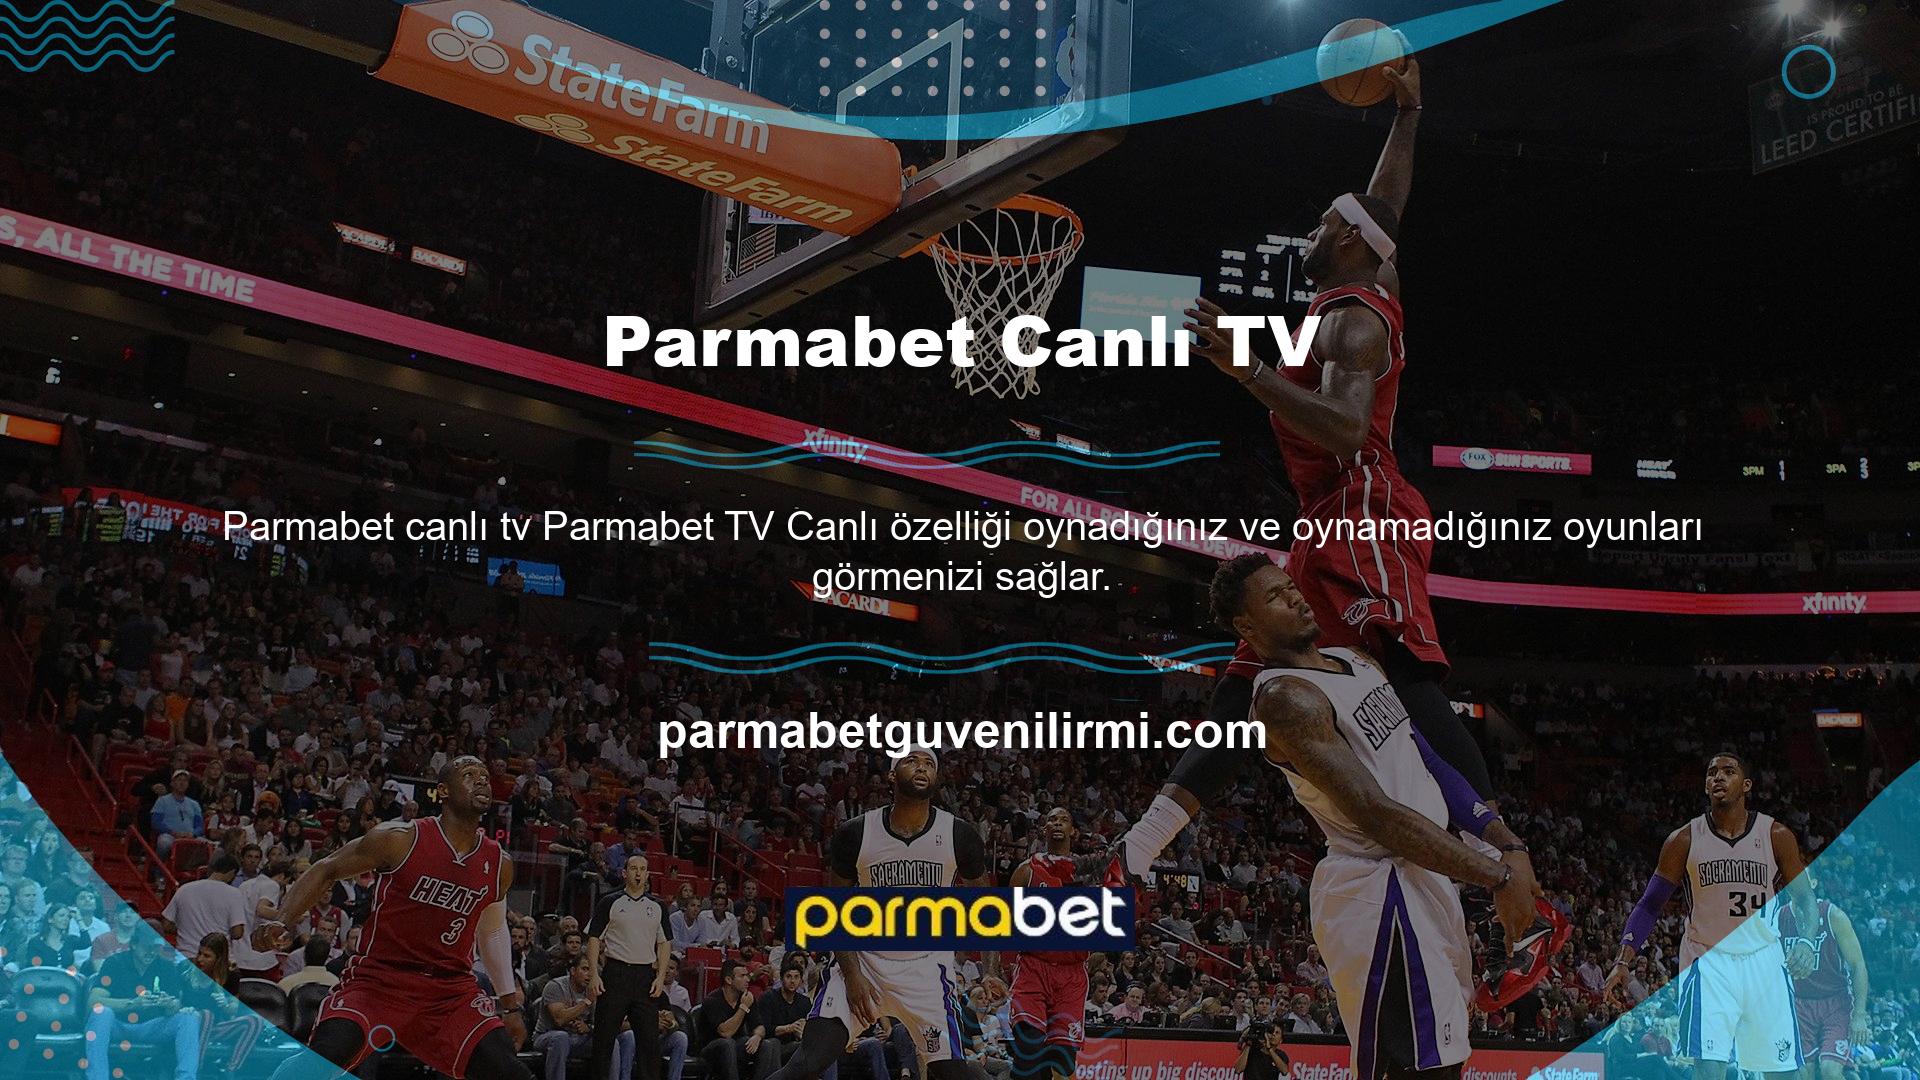 Parmabet çevrimiçi casino sitesi, diğer birçok çevrimiçi bahis platformundan farklı olarak canlı TV yayınlaması bakımından benzersizdir